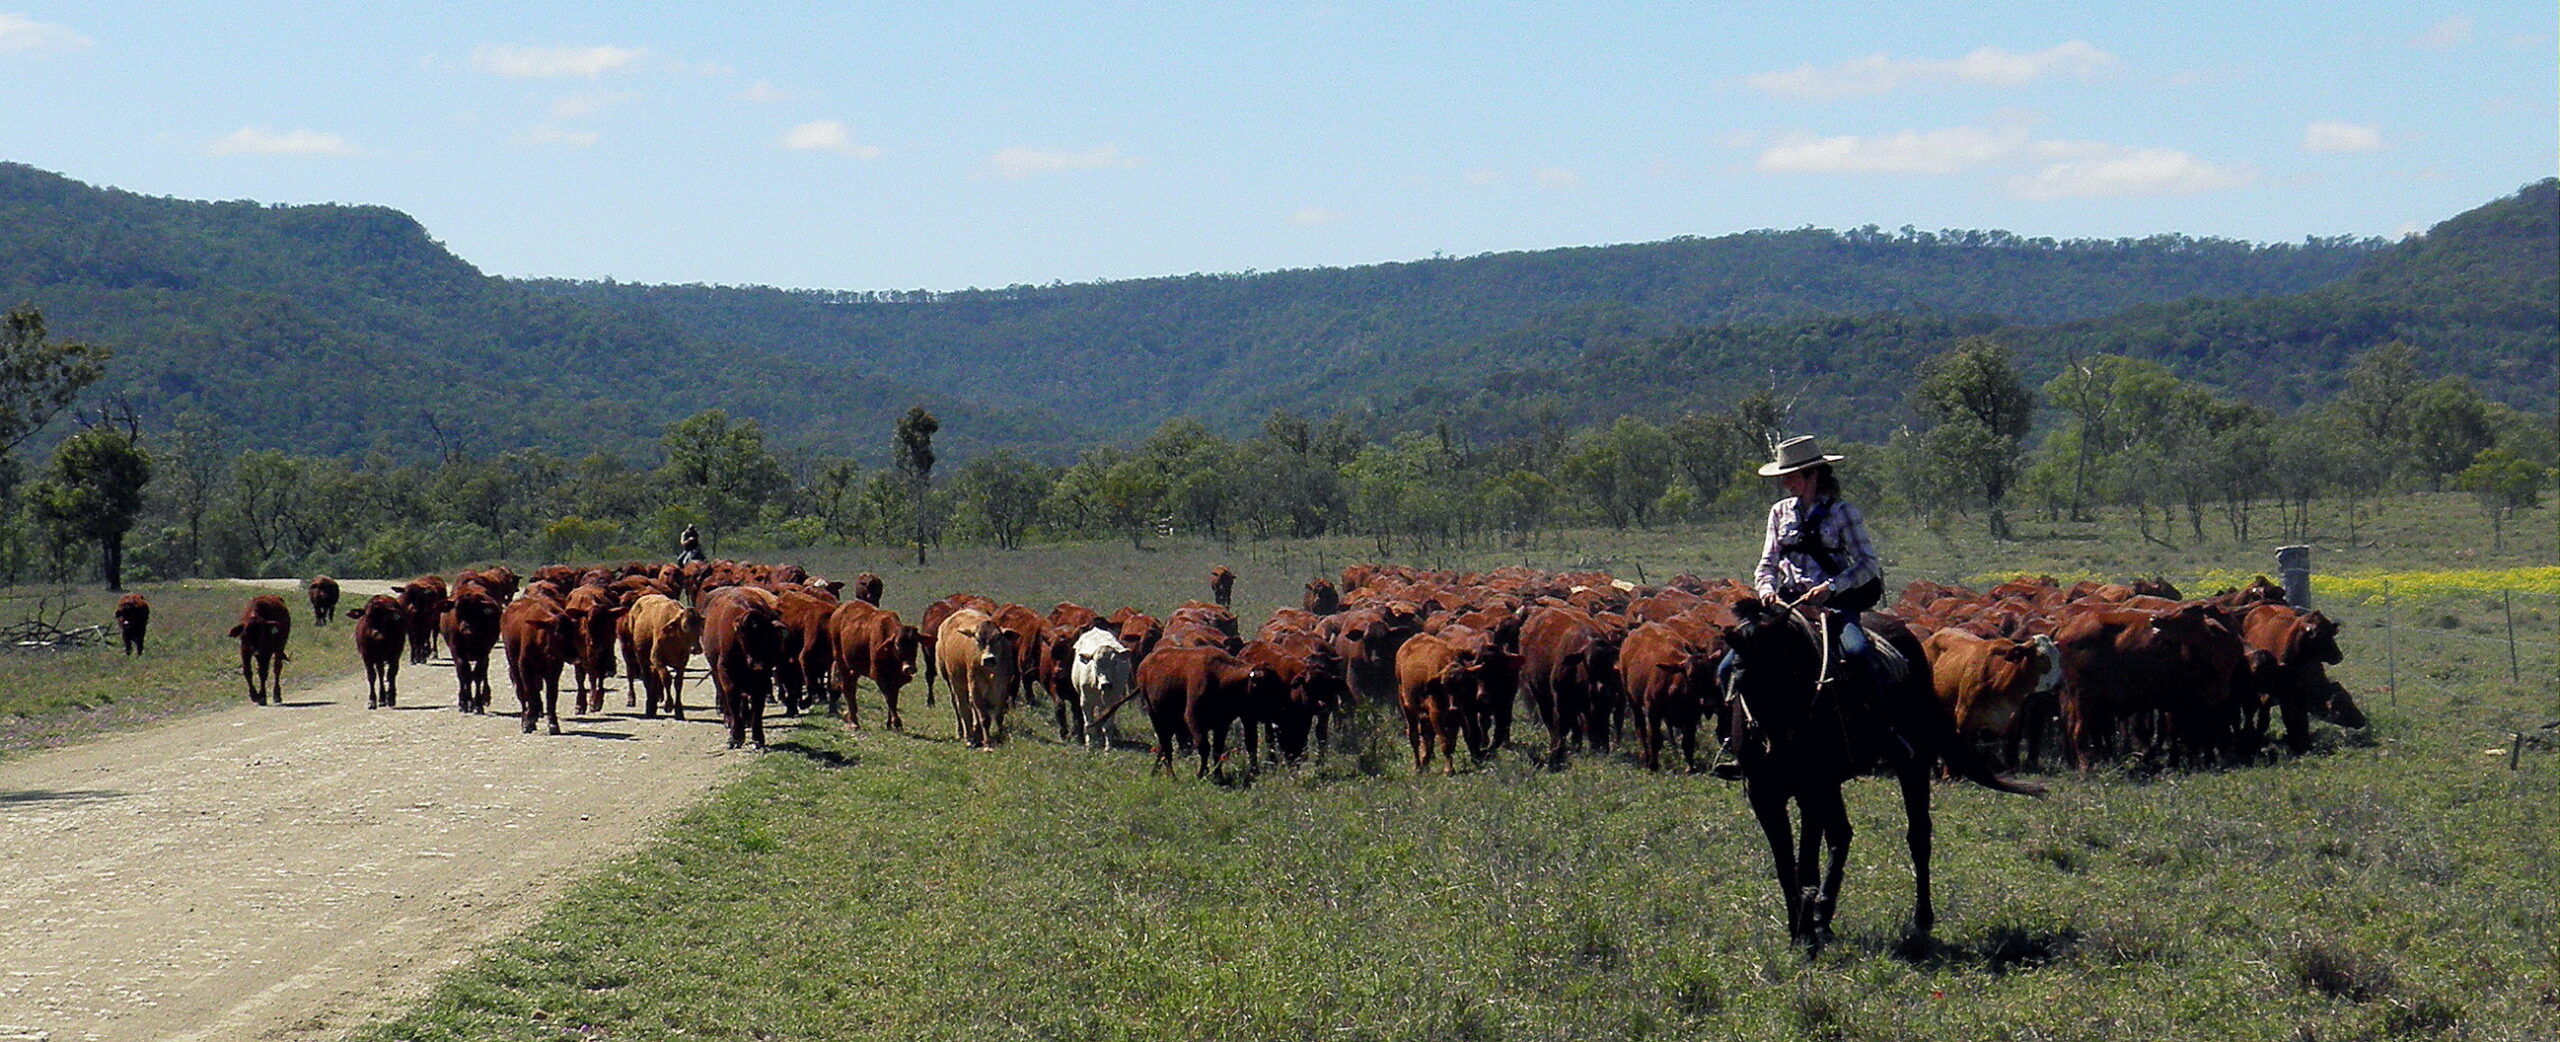 Alice sur un cheval guidant un troupeau en australie